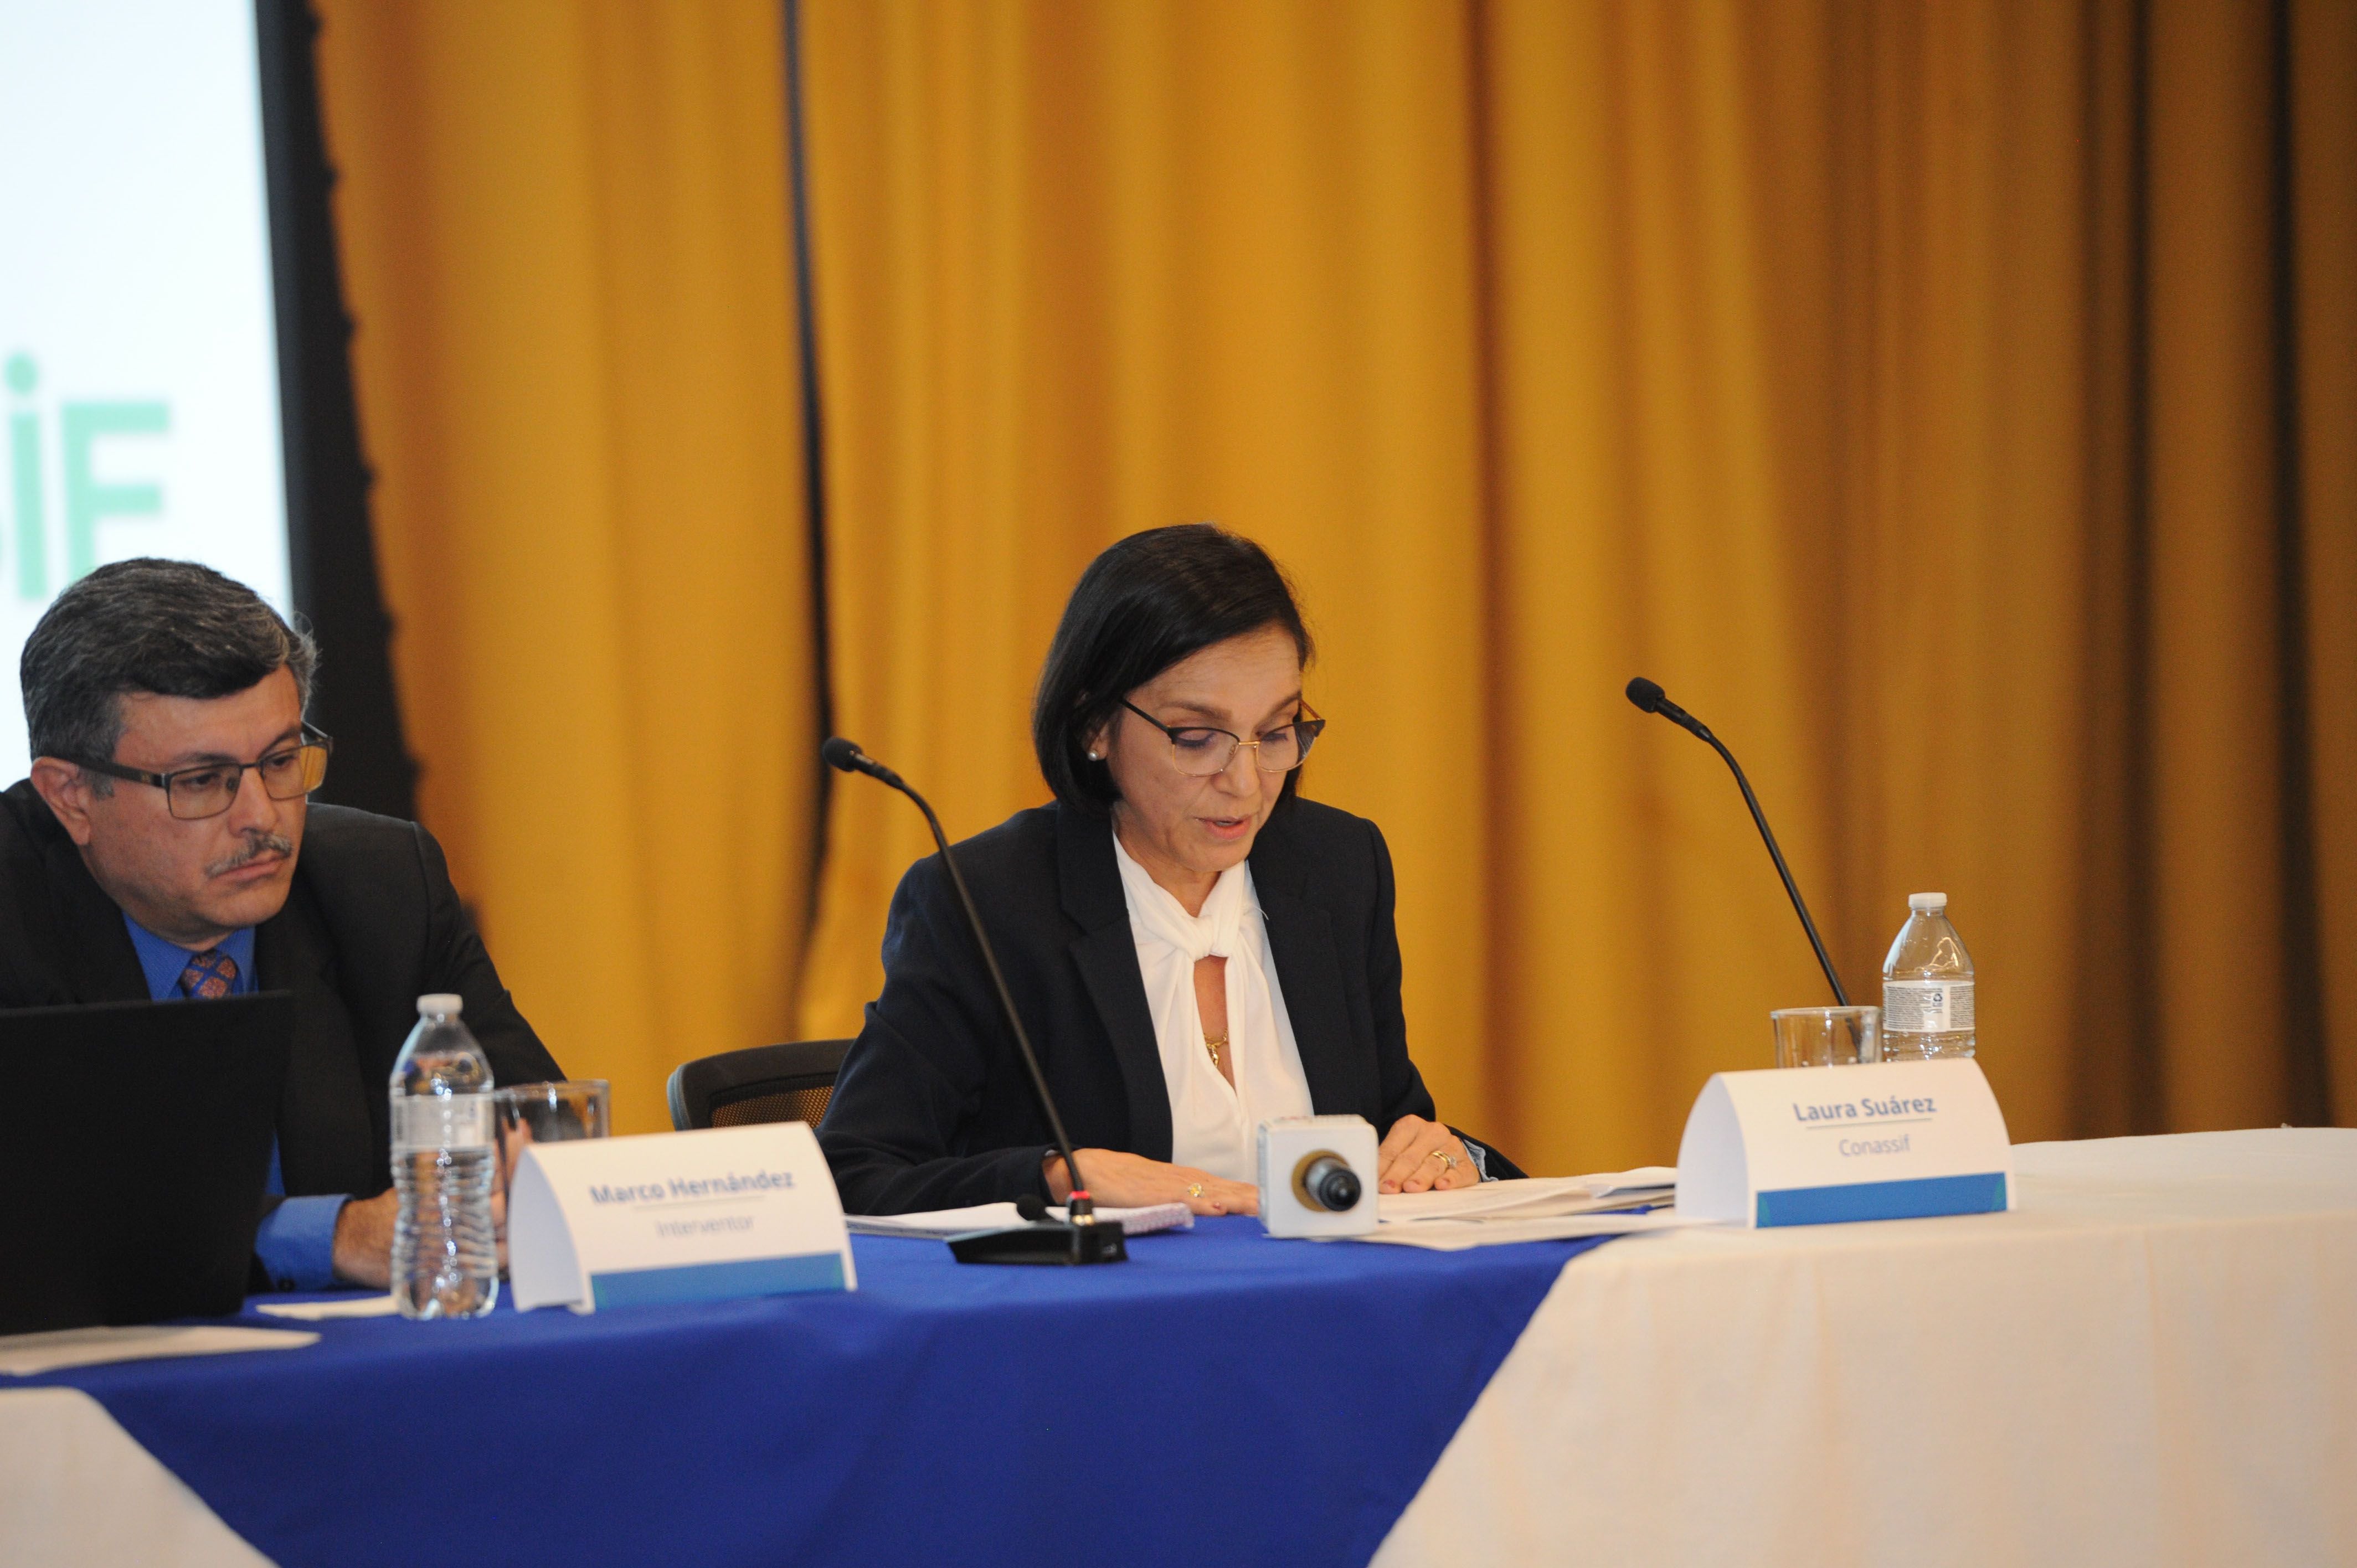 Laura Suárez, presidenta del Conassif, dirigió en la sesión del Consejo en que se declaró confidencial una parte del informe final de intervención de Coopeservidores elaborado por Marco Hernández Ávila y el equipo de intervención.